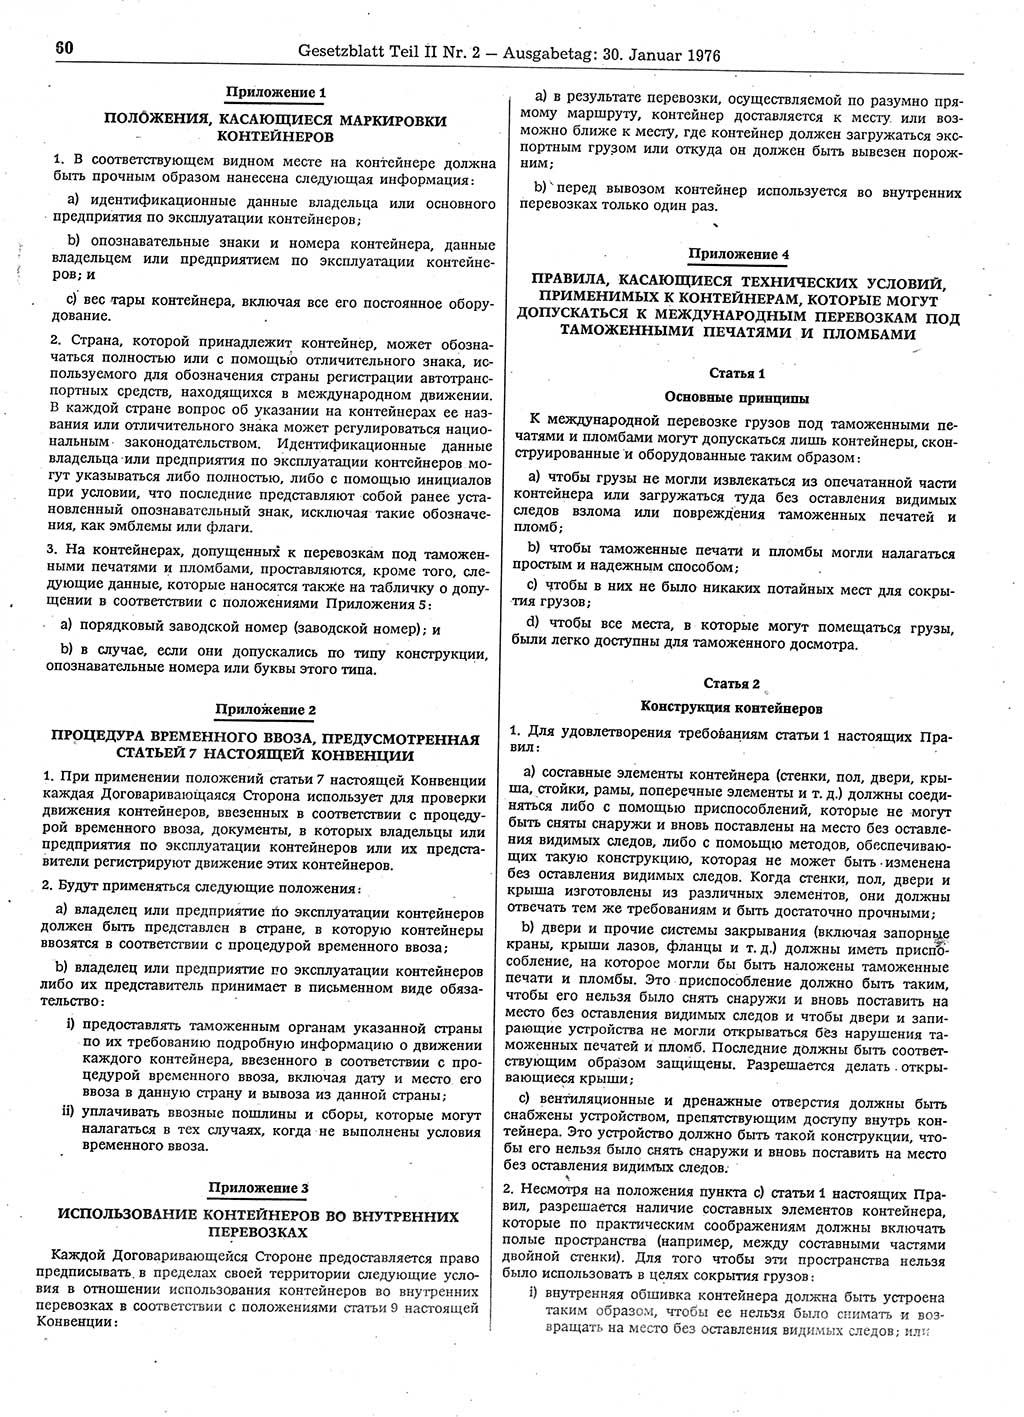 Gesetzblatt (GBl.) der Deutschen Demokratischen Republik (DDR) Teil ⅠⅠ 1976, Seite 60 (GBl. DDR ⅠⅠ 1976, S. 60)